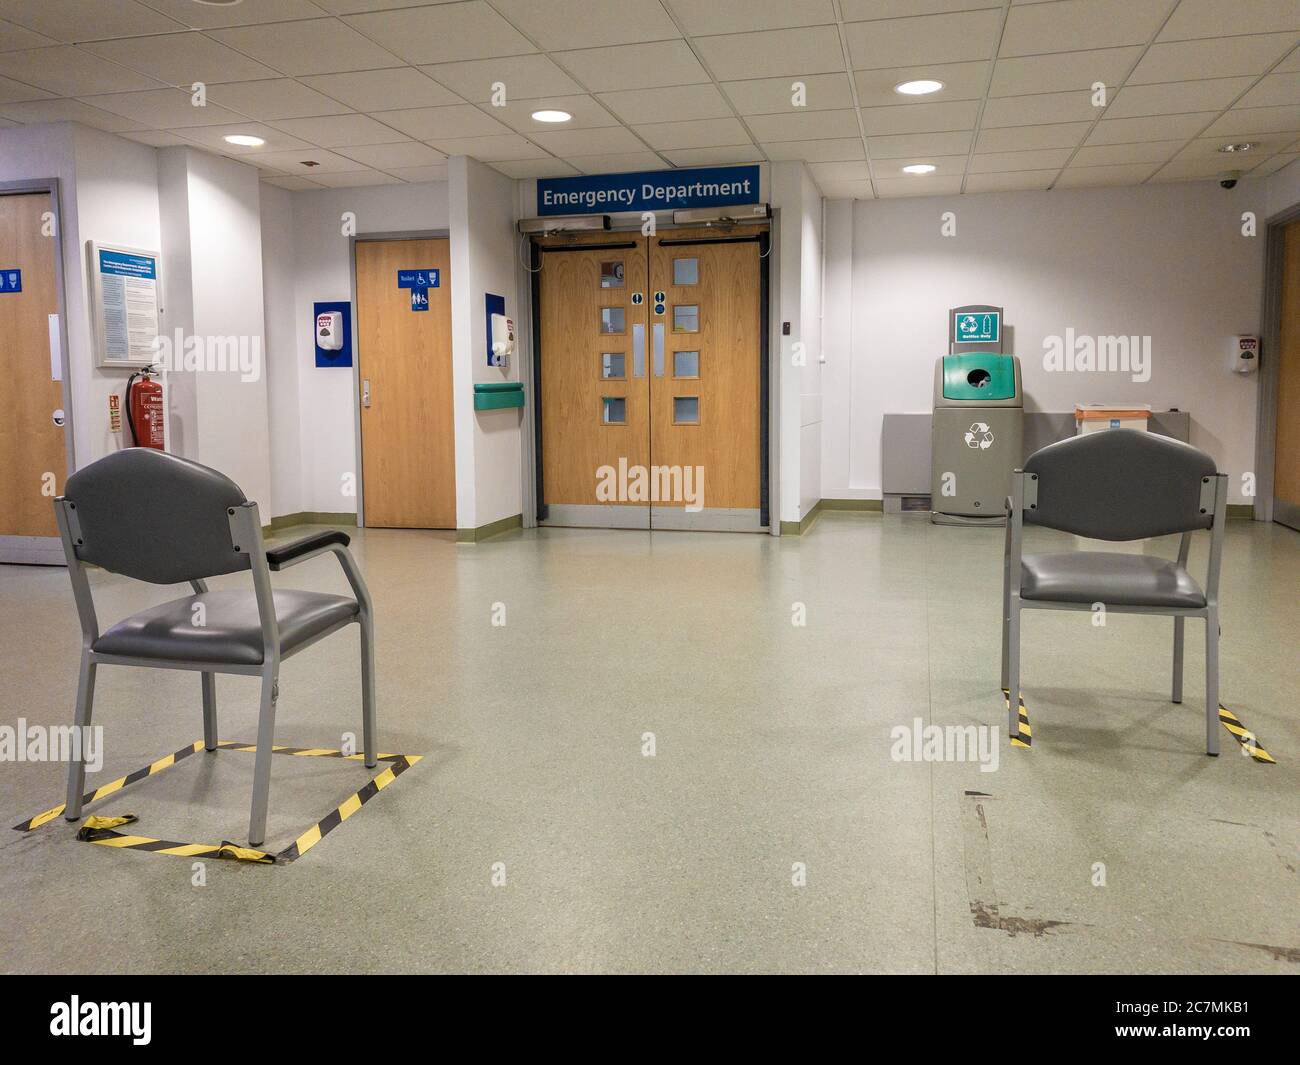 Sillas socialmente distanciadas en el área de espera del Departamento A&E de NHS debido a Covid-19, Reino Unido Foto de stock